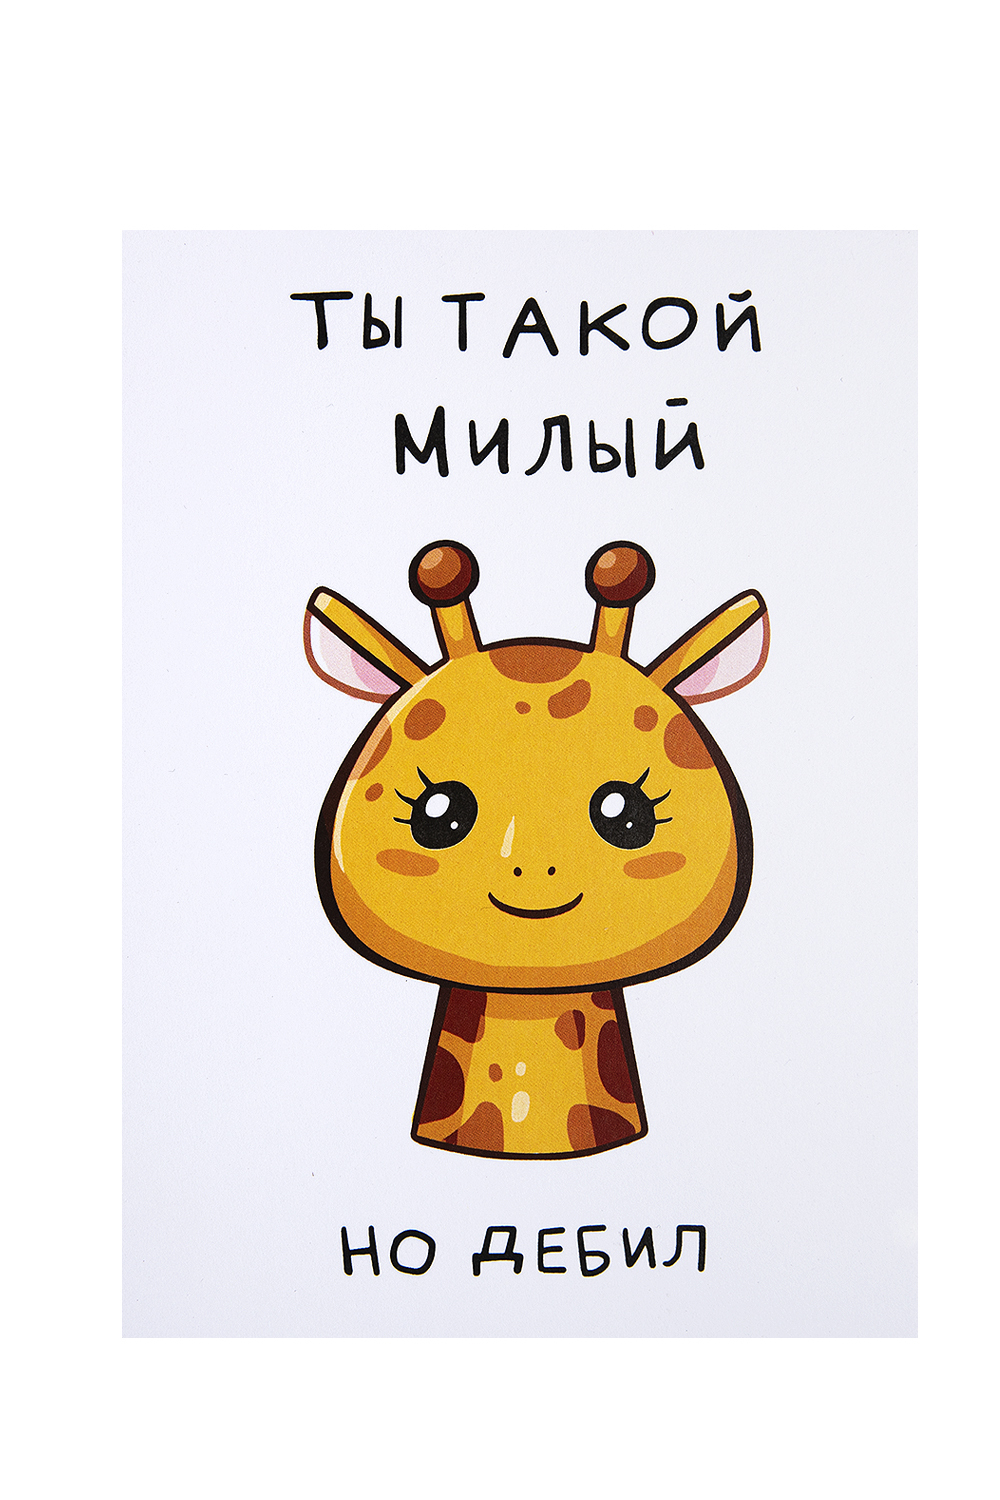 Конверты для денег купить оптом в Минске, цена на открытки для денег